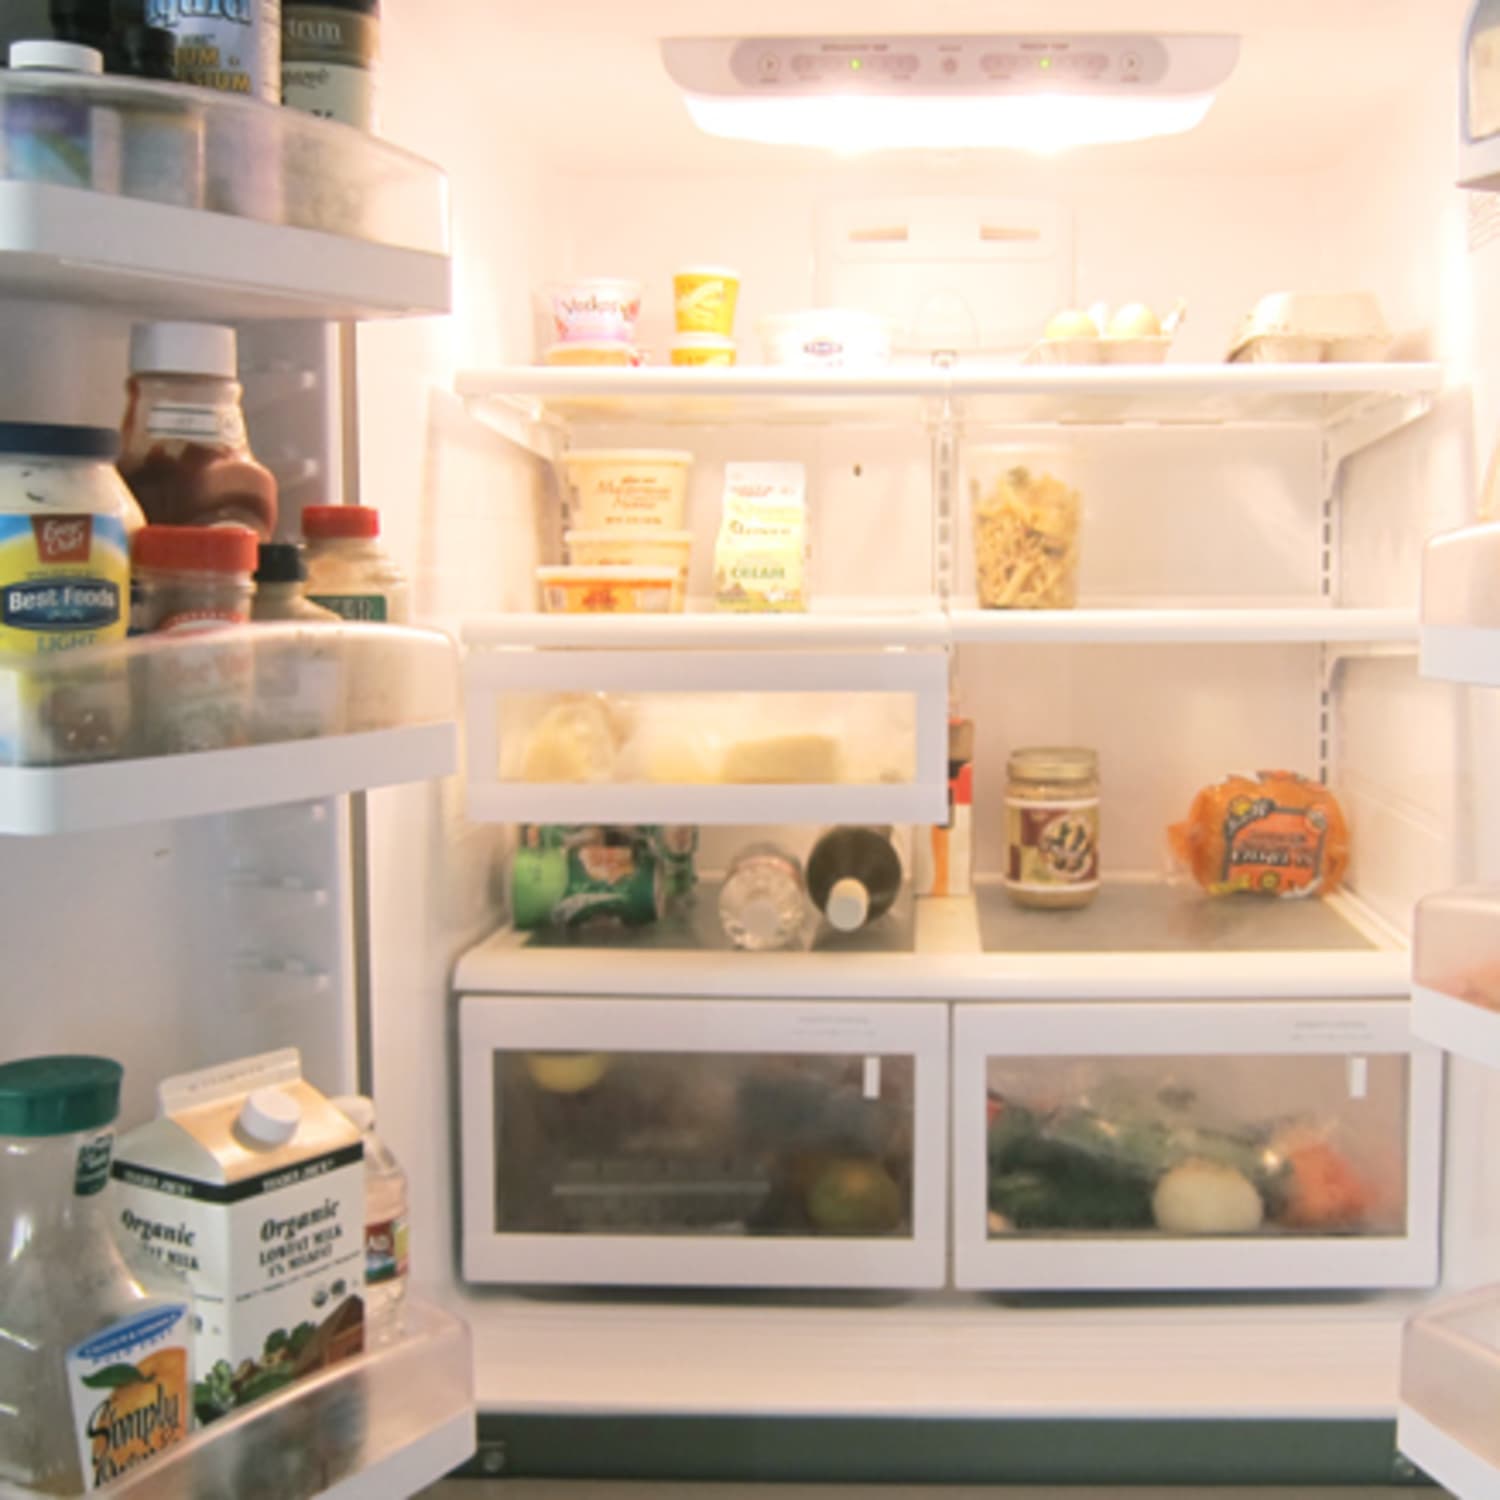 How to Organize A Refrigerator